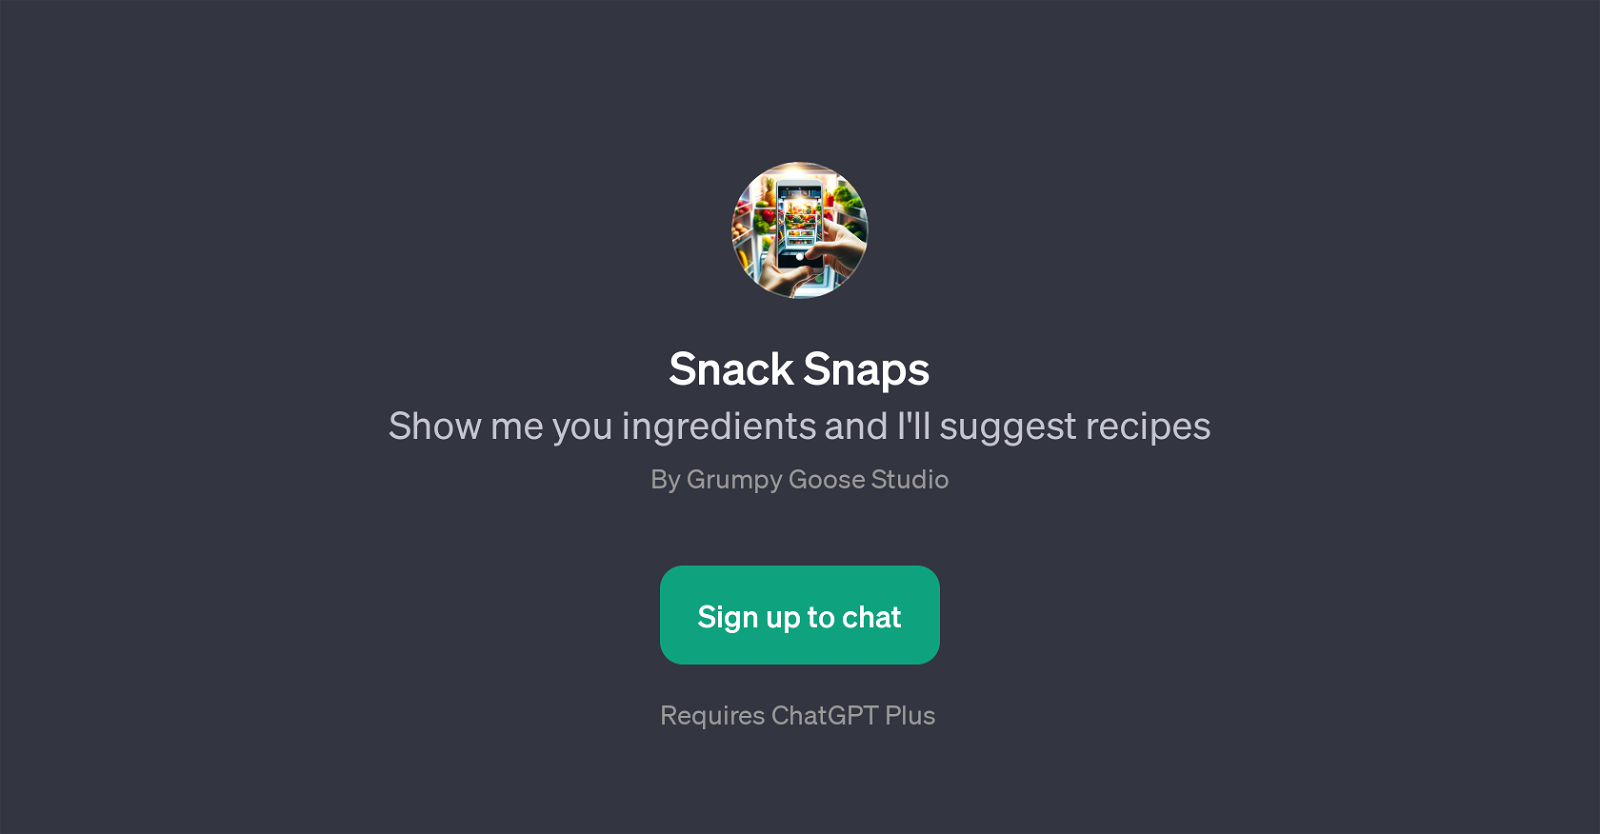 Snack Snaps website